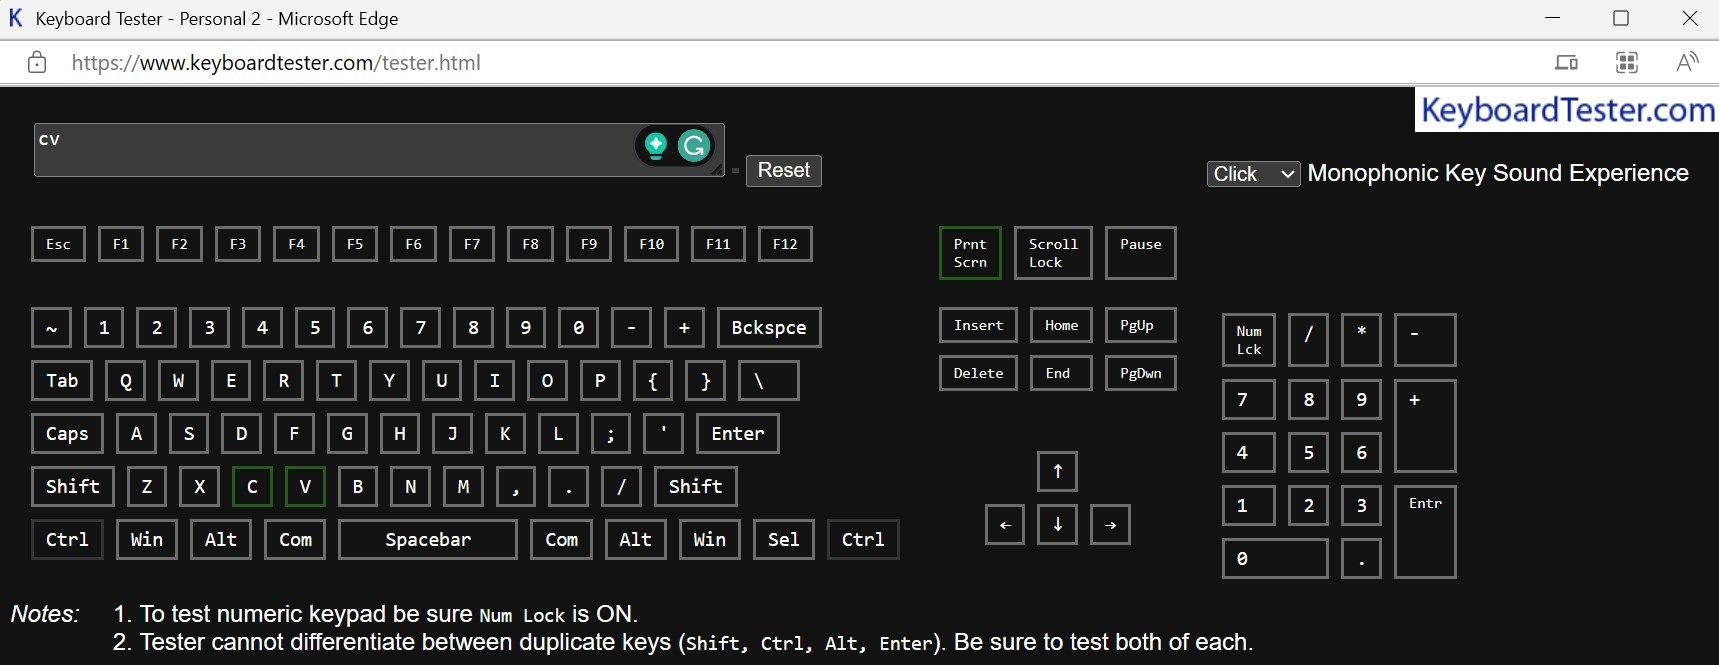 Testing keyboard keys on a keyboard tester website